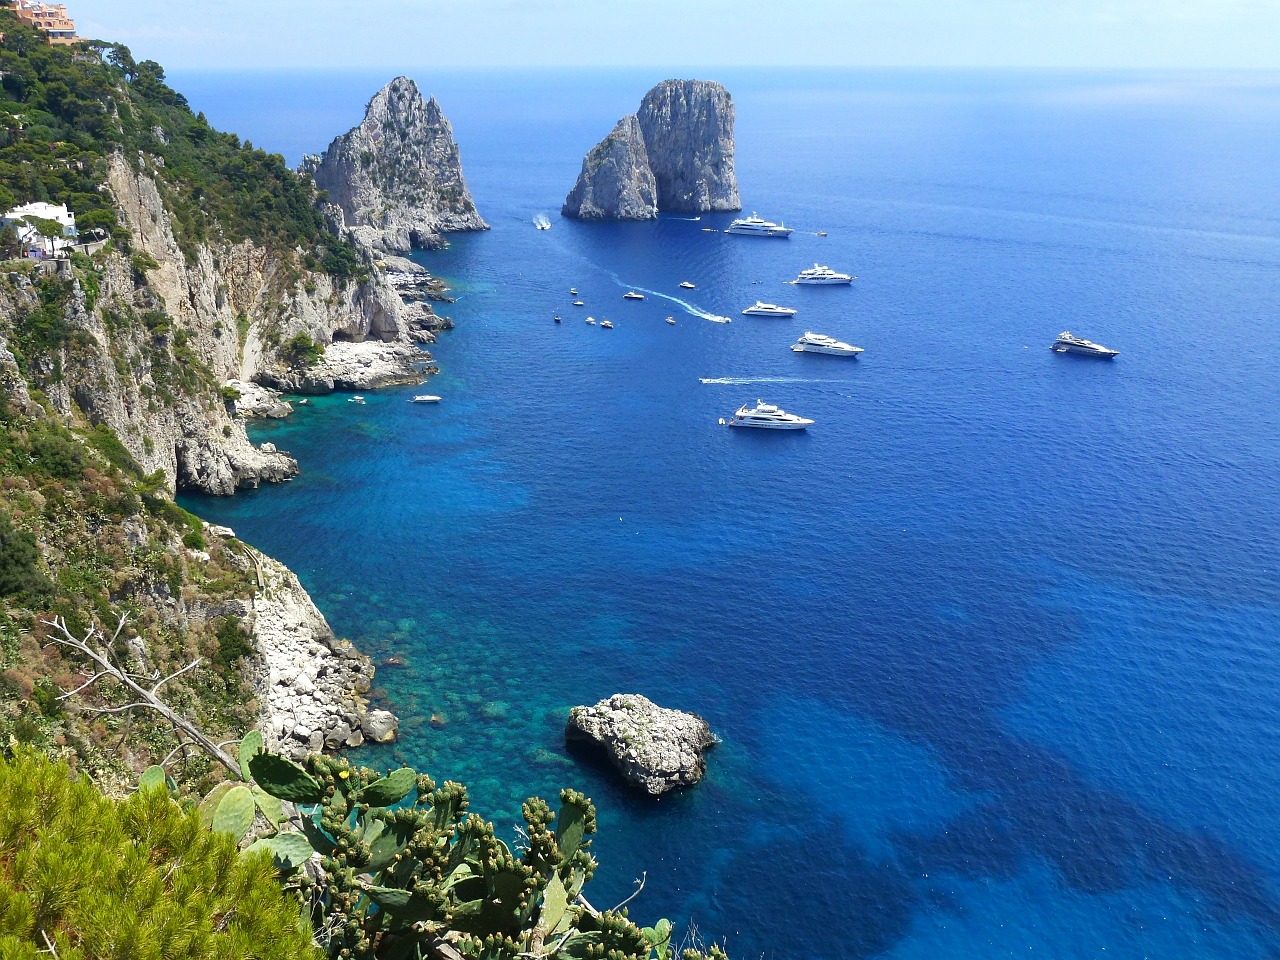 Nápoly és Capri, a kalandok földje - VLOG